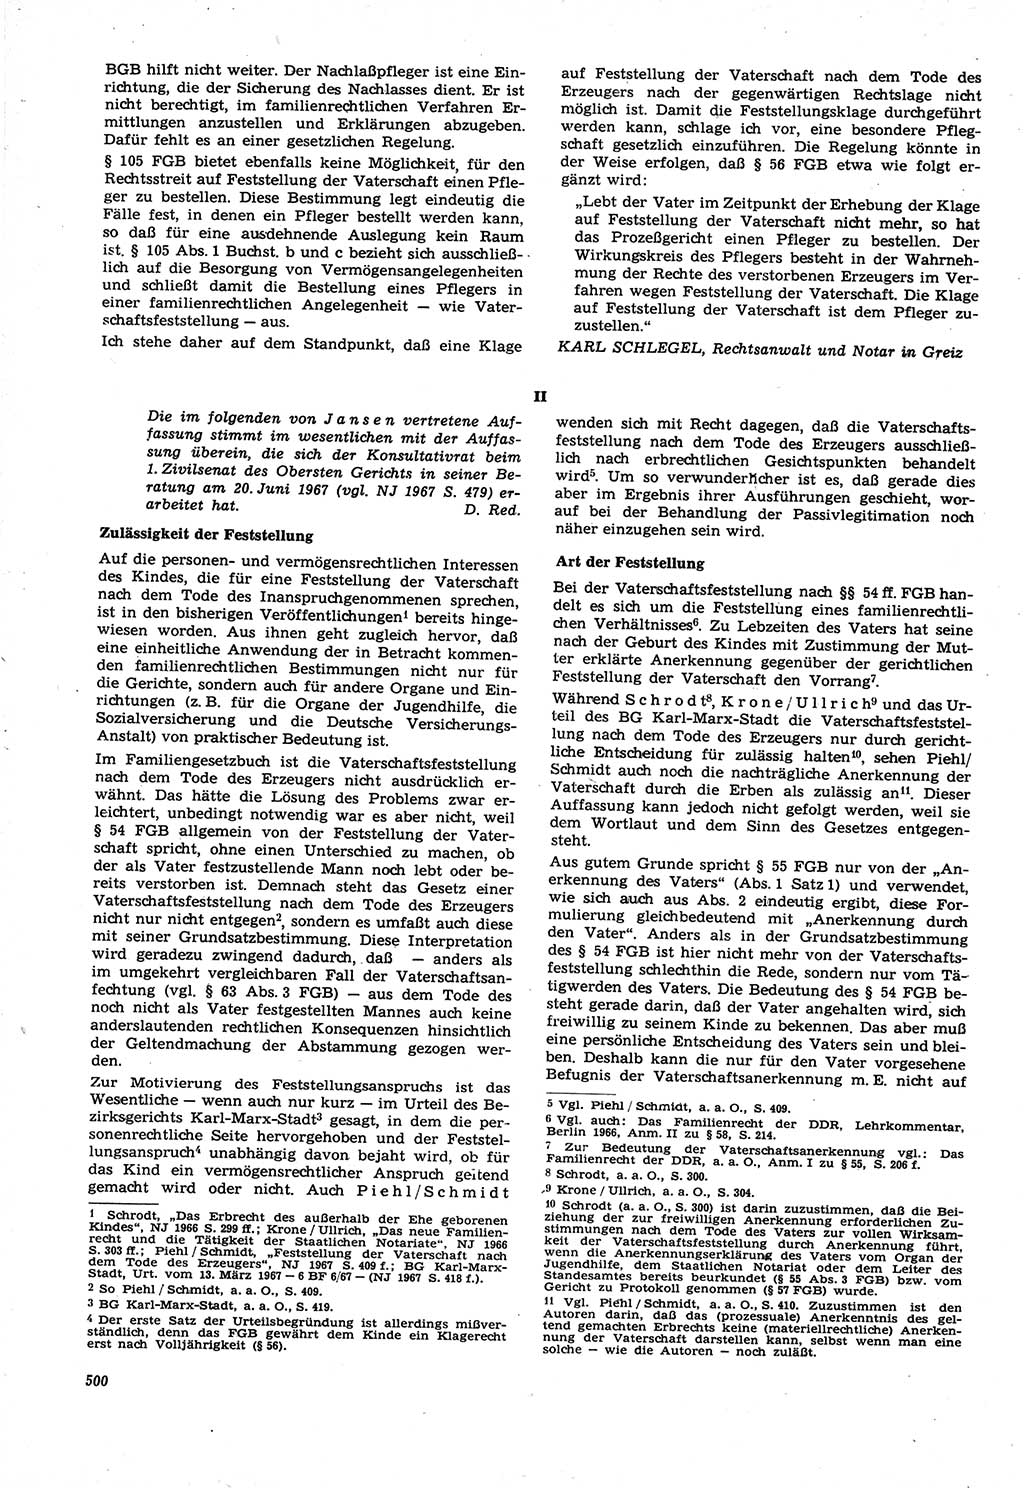 Neue Justiz (NJ), Zeitschrift für Recht und Rechtswissenschaft [Deutsche Demokratische Republik (DDR)], 21. Jahrgang 1967, Seite 500 (NJ DDR 1967, S. 500)